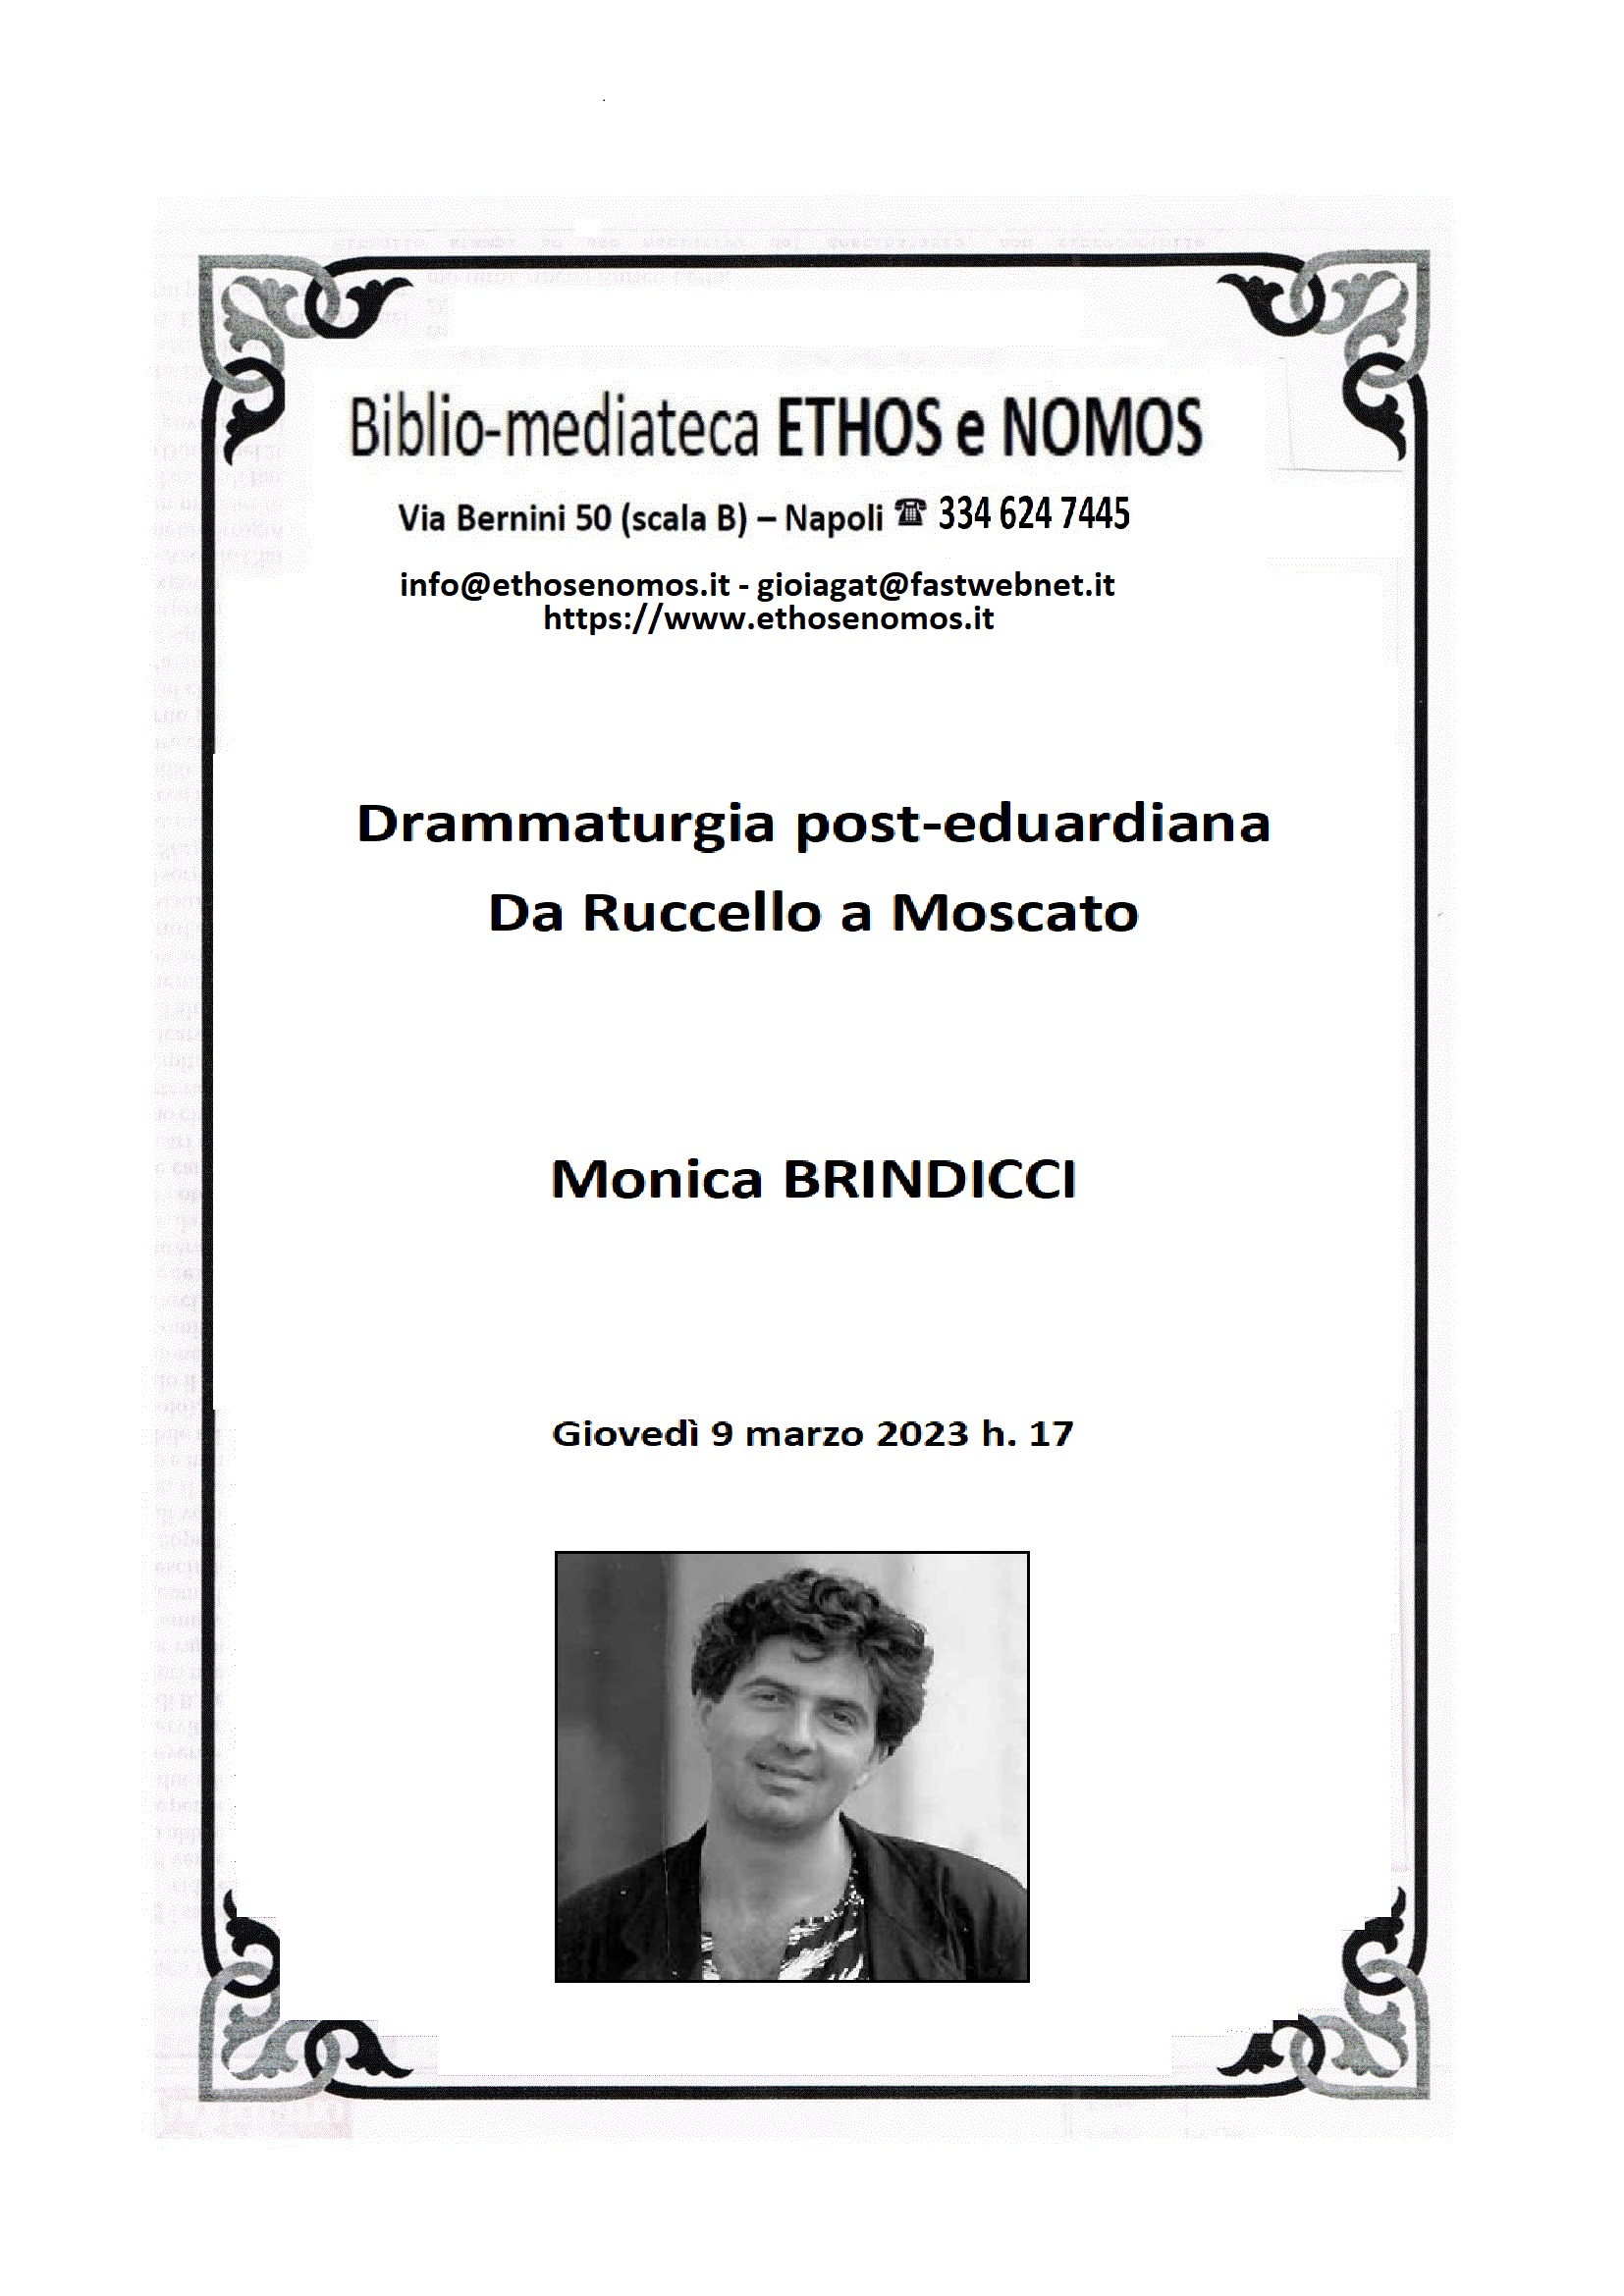 Monica BRINDICCI  - Drammaturgia post-eduardiana: da Ruccello a Moscato